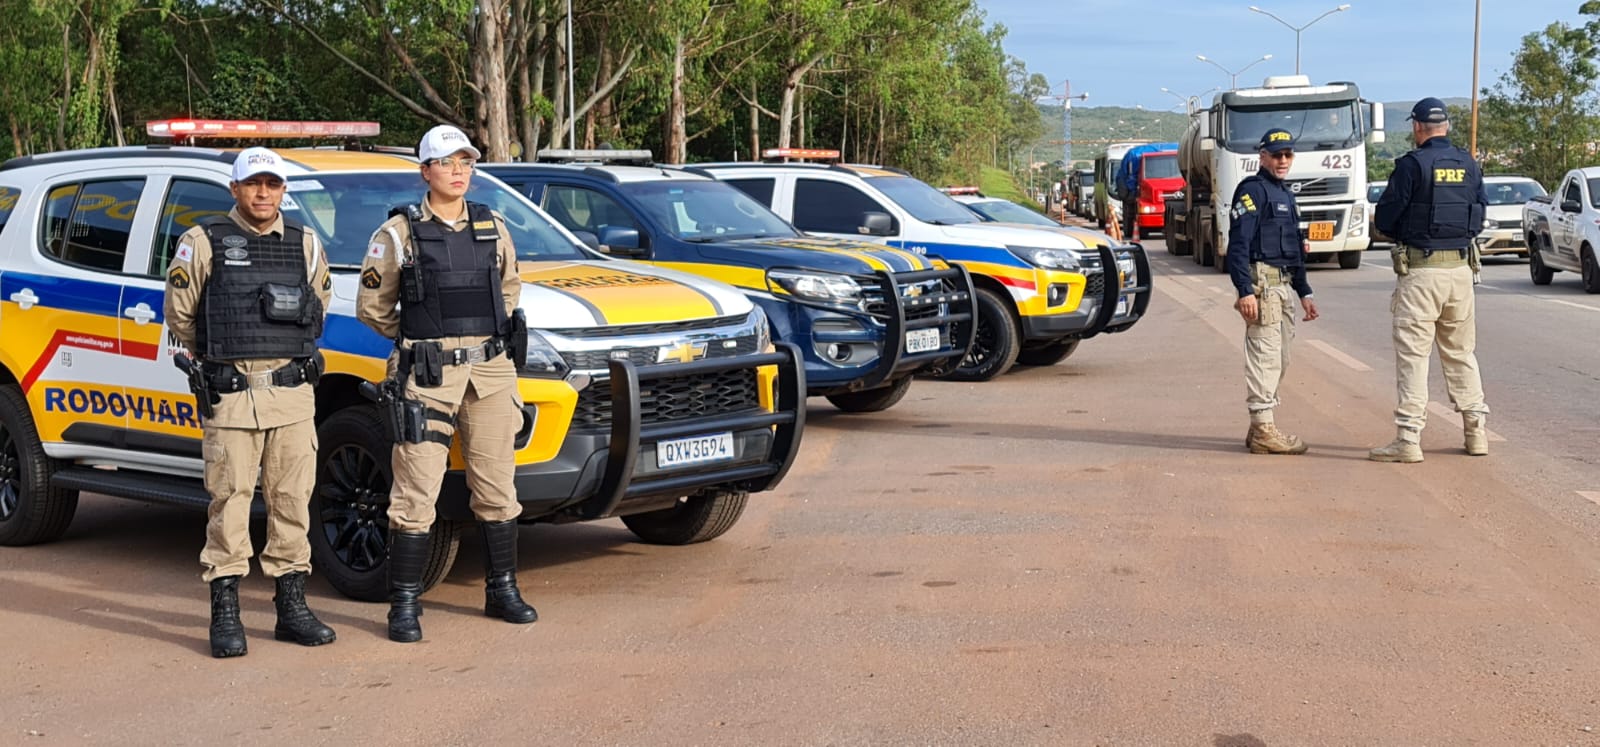 Polícia Militar Rodoviária lança aplicativo que vai monitorar rodovias com ajuda do cidadão